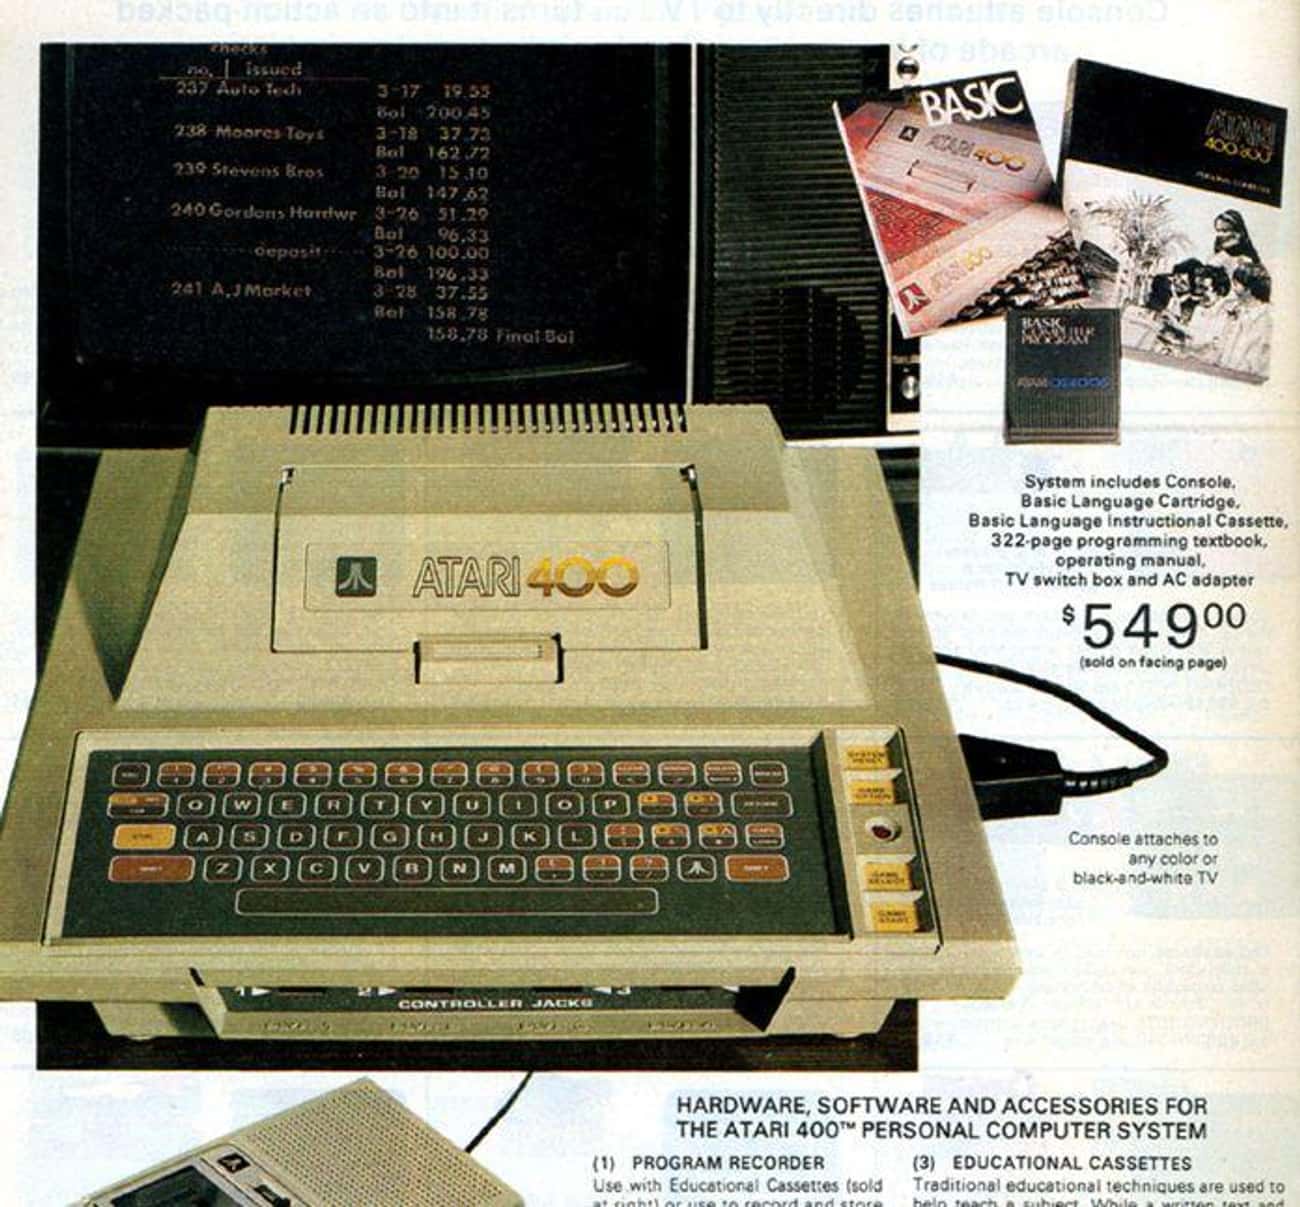 Atari 400 PC: $549.00